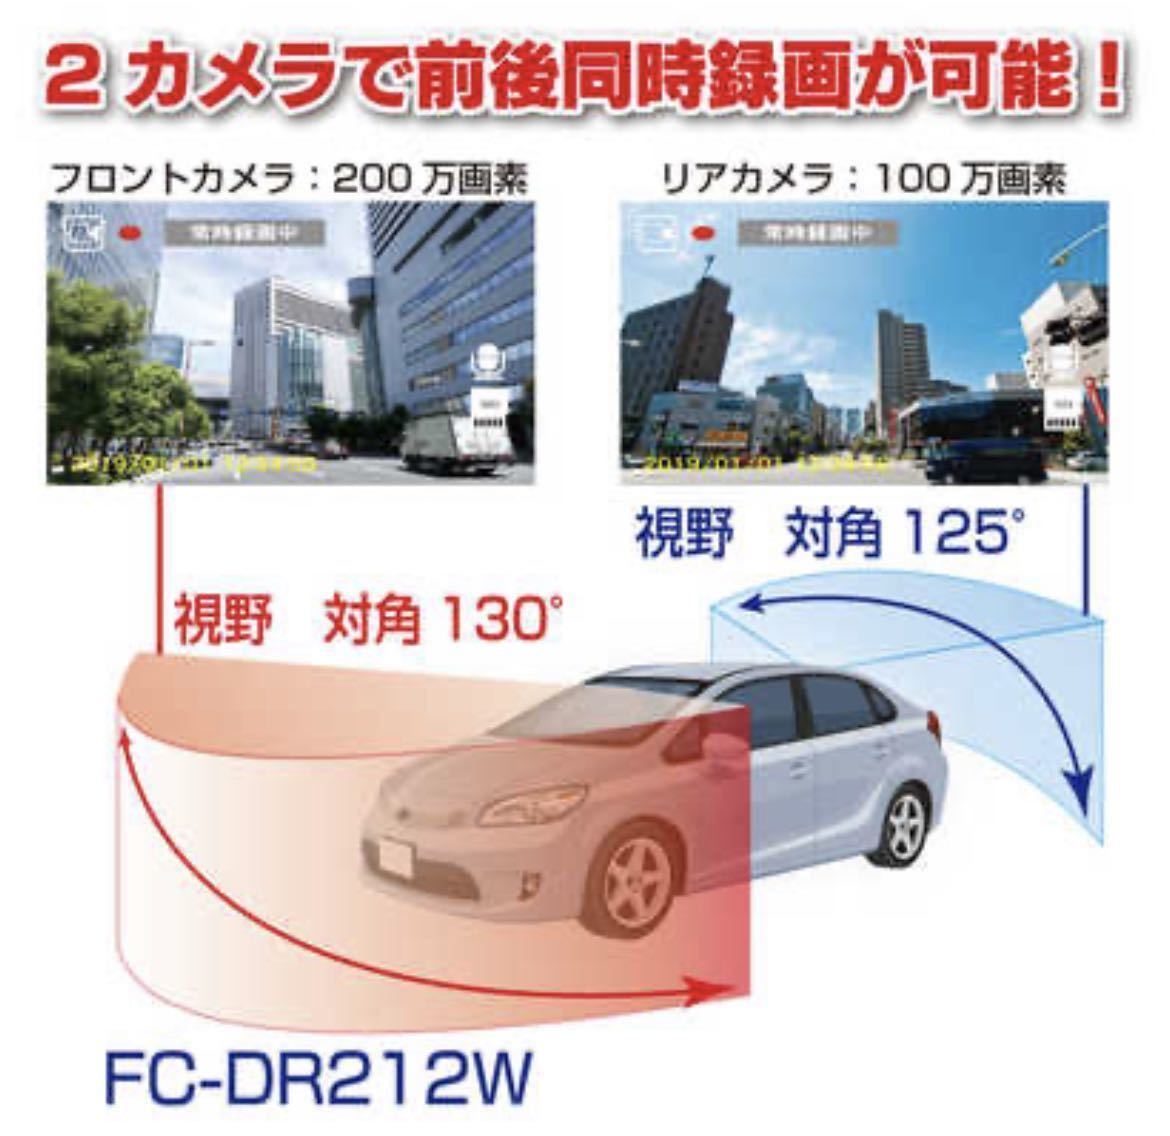 F.R.C. エフ・アール・シー FIRSTCOM FC-DR212W 2カメラ同時録画 高機能 ドライブレコーダー_画像4